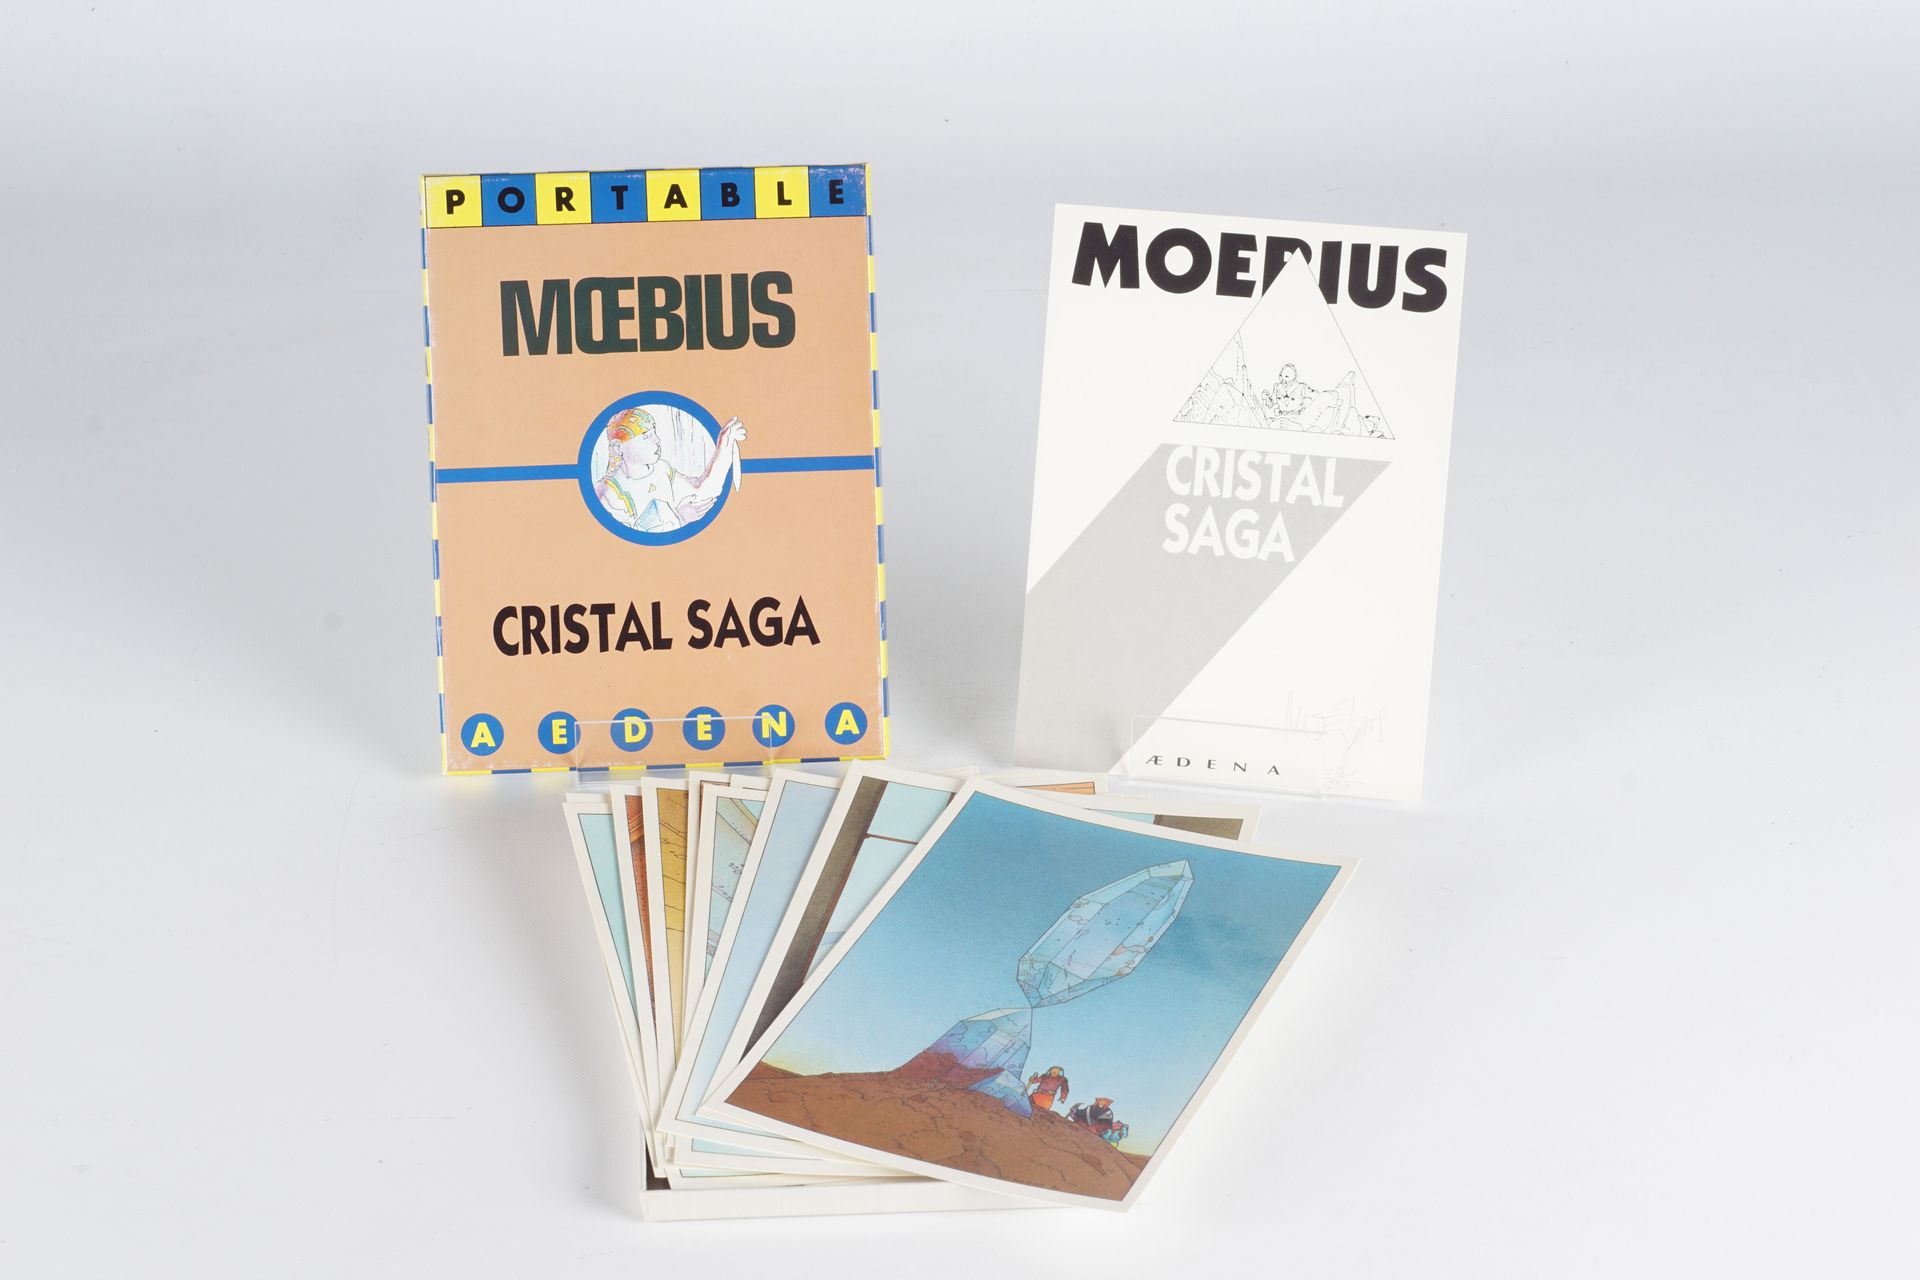 MOEBIUS 作品集 "Cristal Saga"，1986年，它包含一个由艺术家编号和签名的标题页，以及10张彩色图片和一页印刷说明。